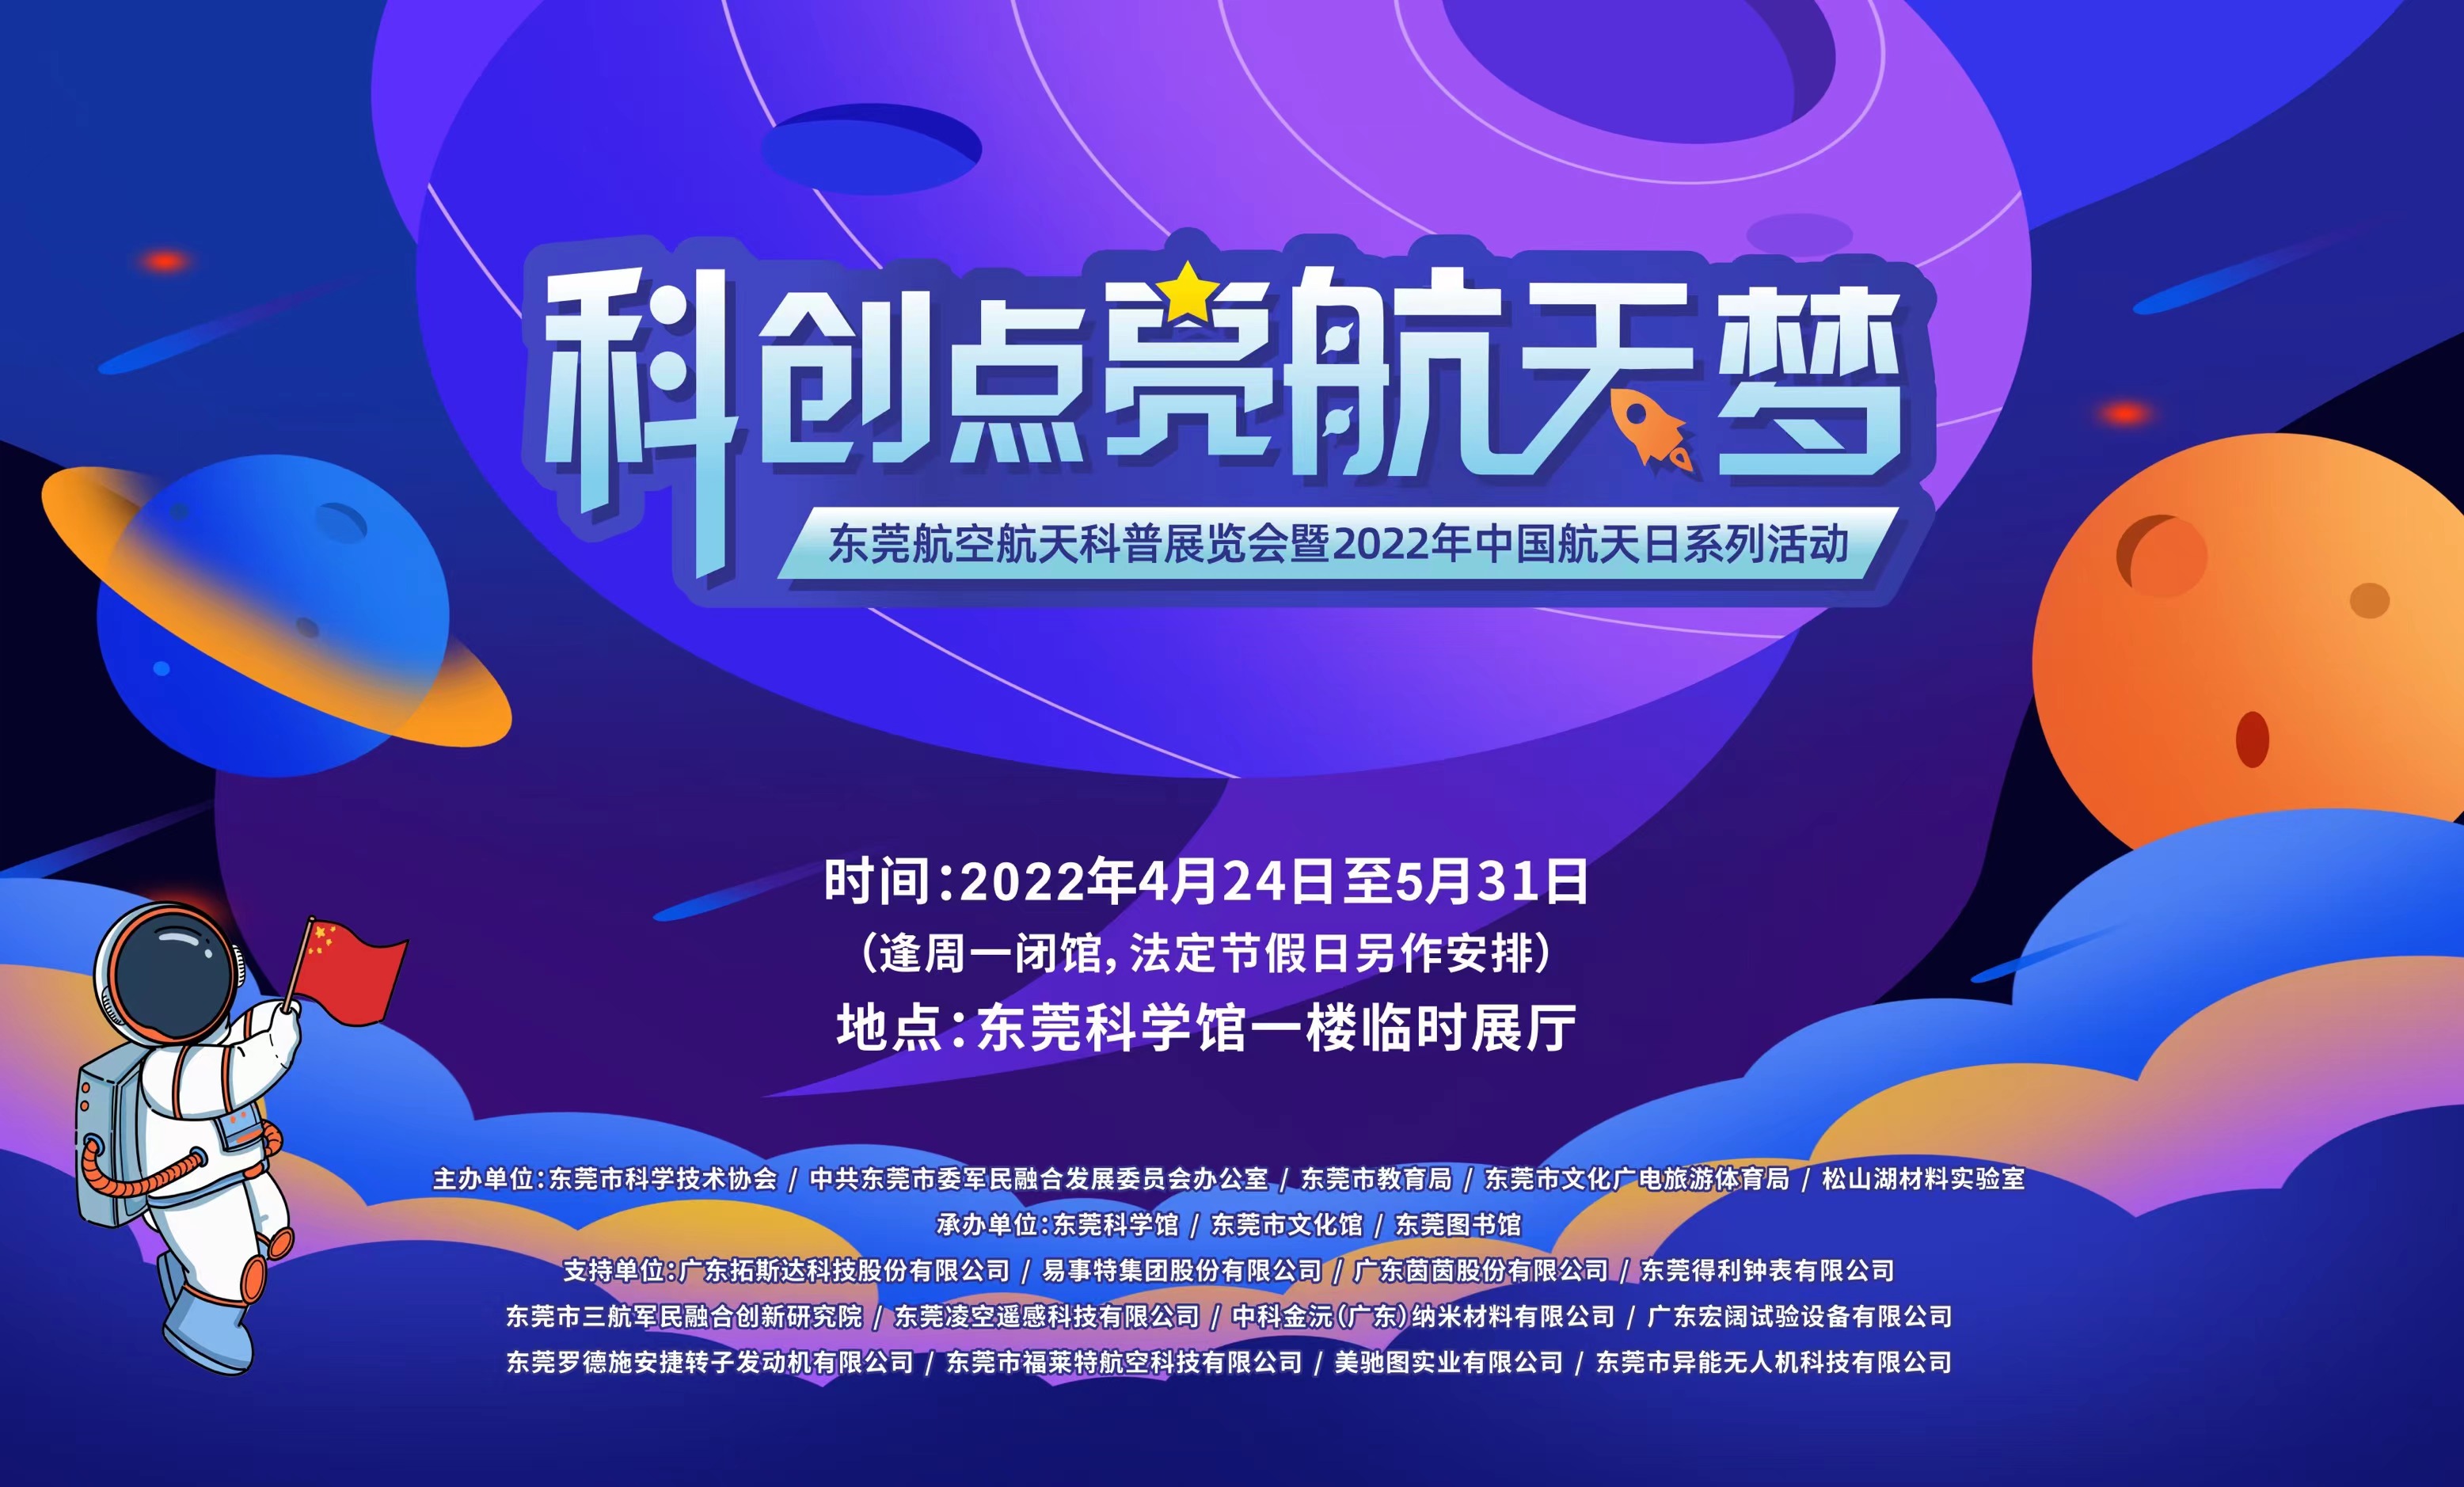 “科创点亮航天梦”——东莞航空航天科普展览会暨2022年中国航天日系列活动正式启动